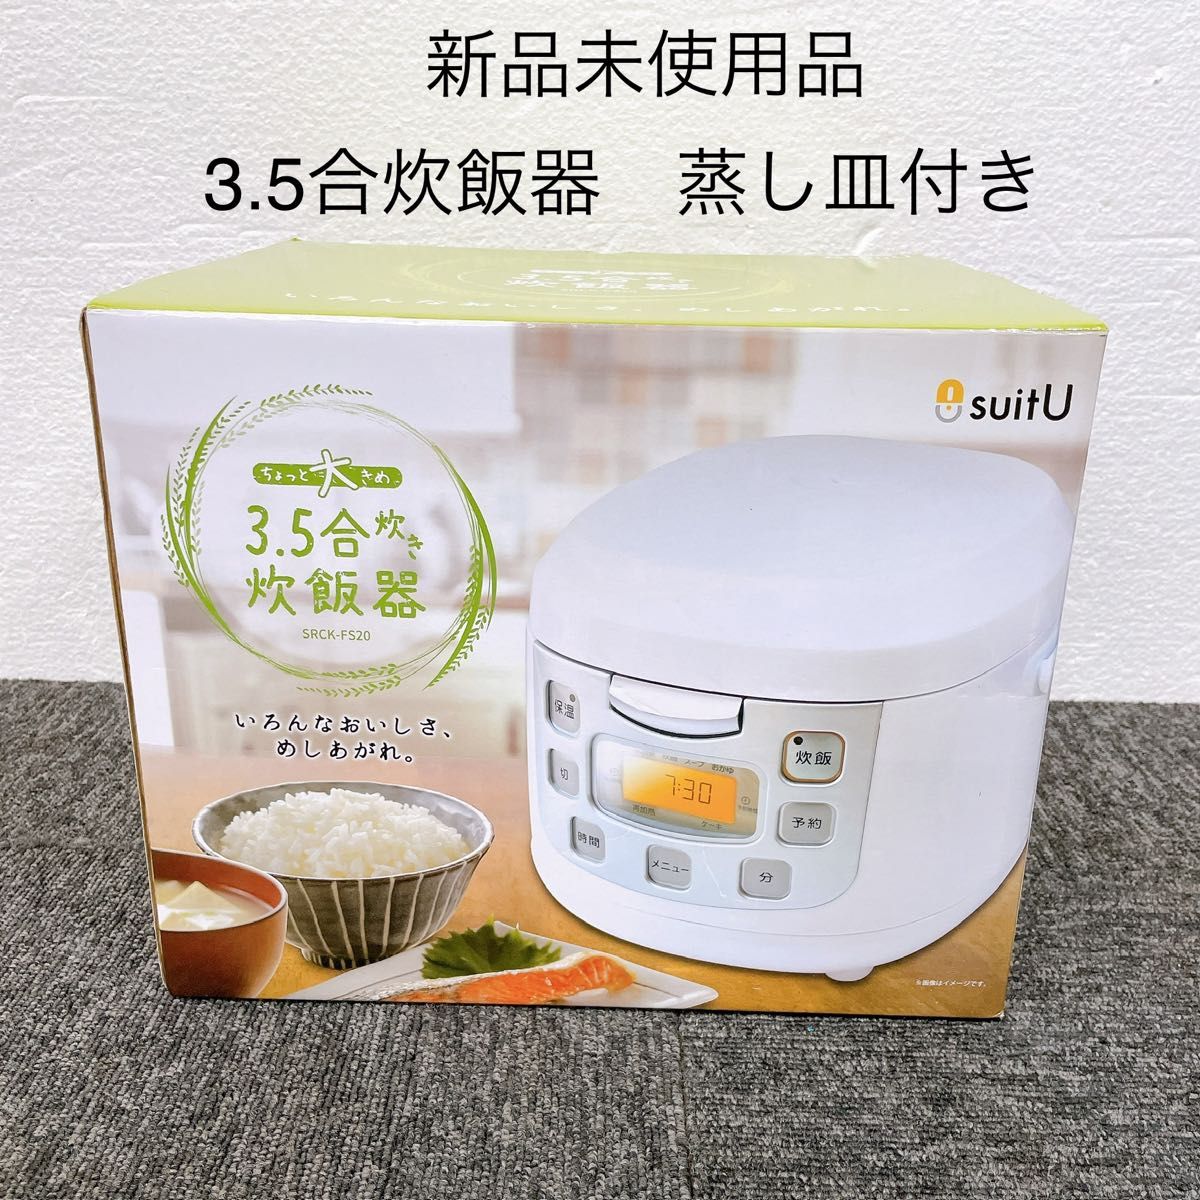 【新品未使用】suitU 3.5合炊き炊飯器 SRCK-FS20